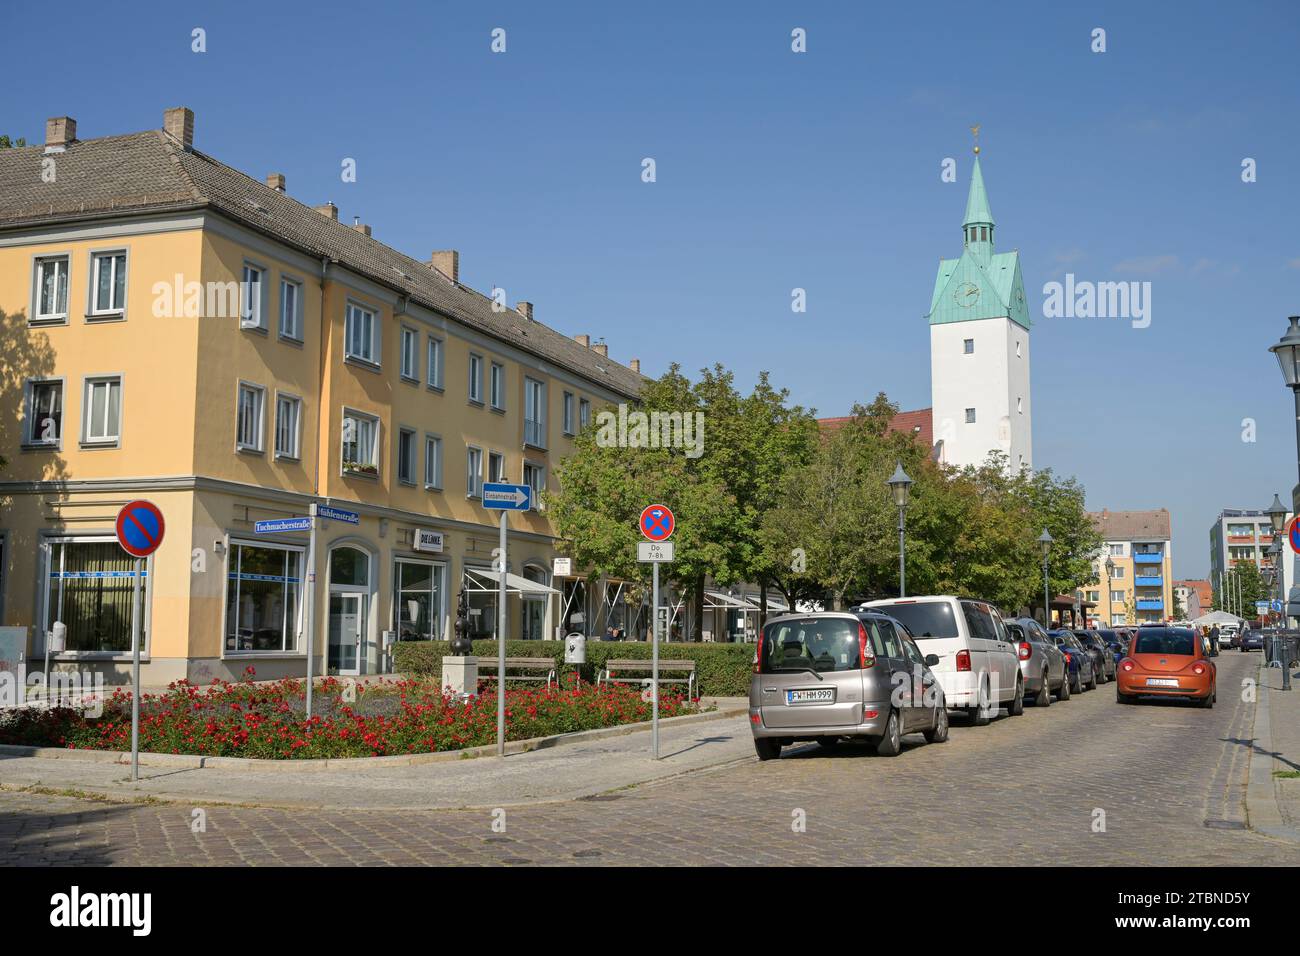 Straßenszene, Mühlenstraße, Altstadt, Fürstenwalde, Landkreis Oder-Spree, Brandenburg, Deutschland Stock Photo